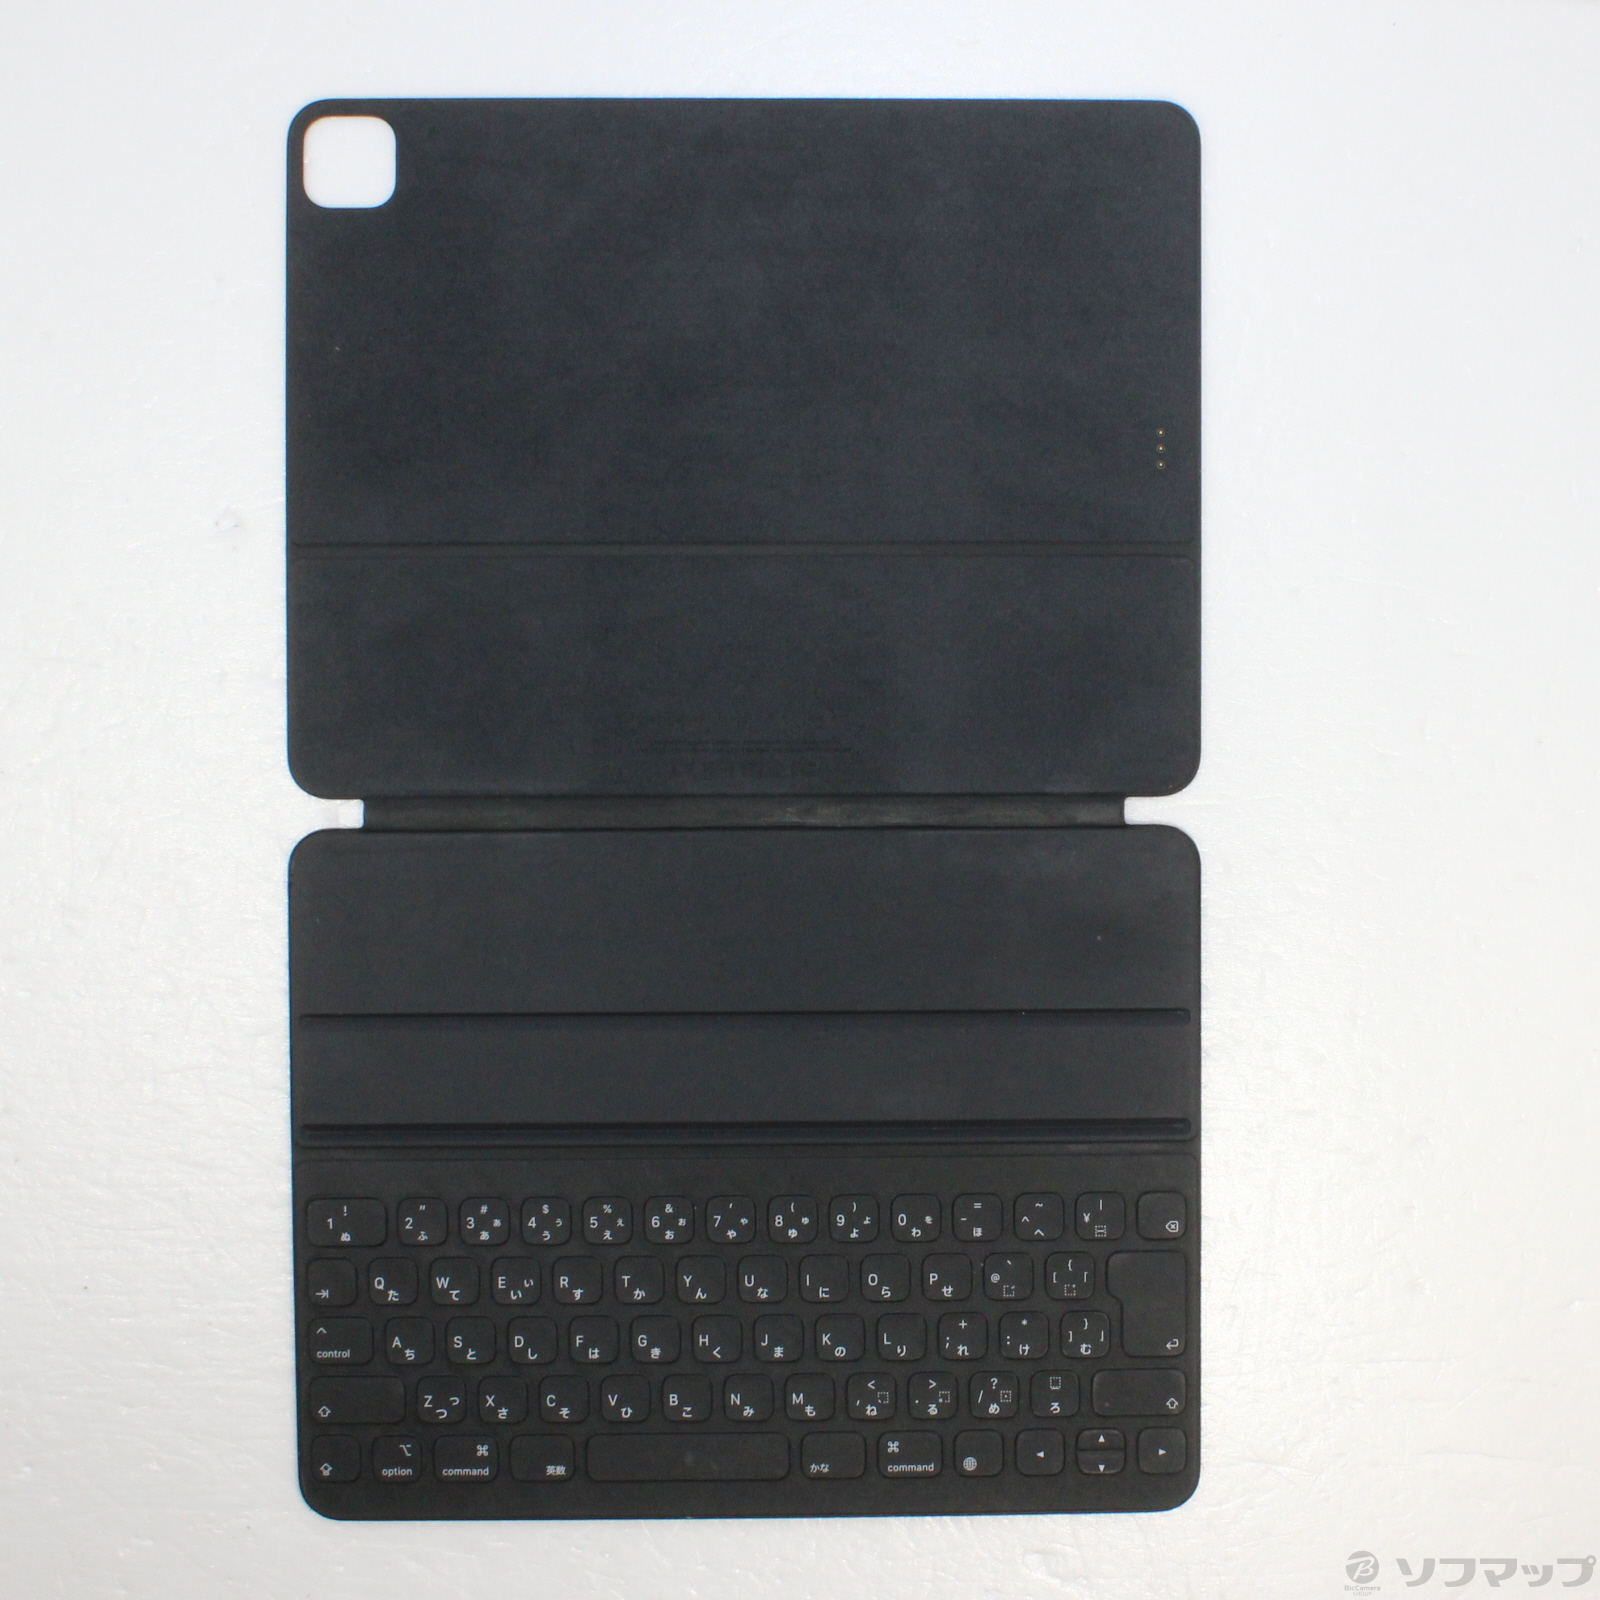 12.9インチiPad Pro用Smart Keyboard 日本語